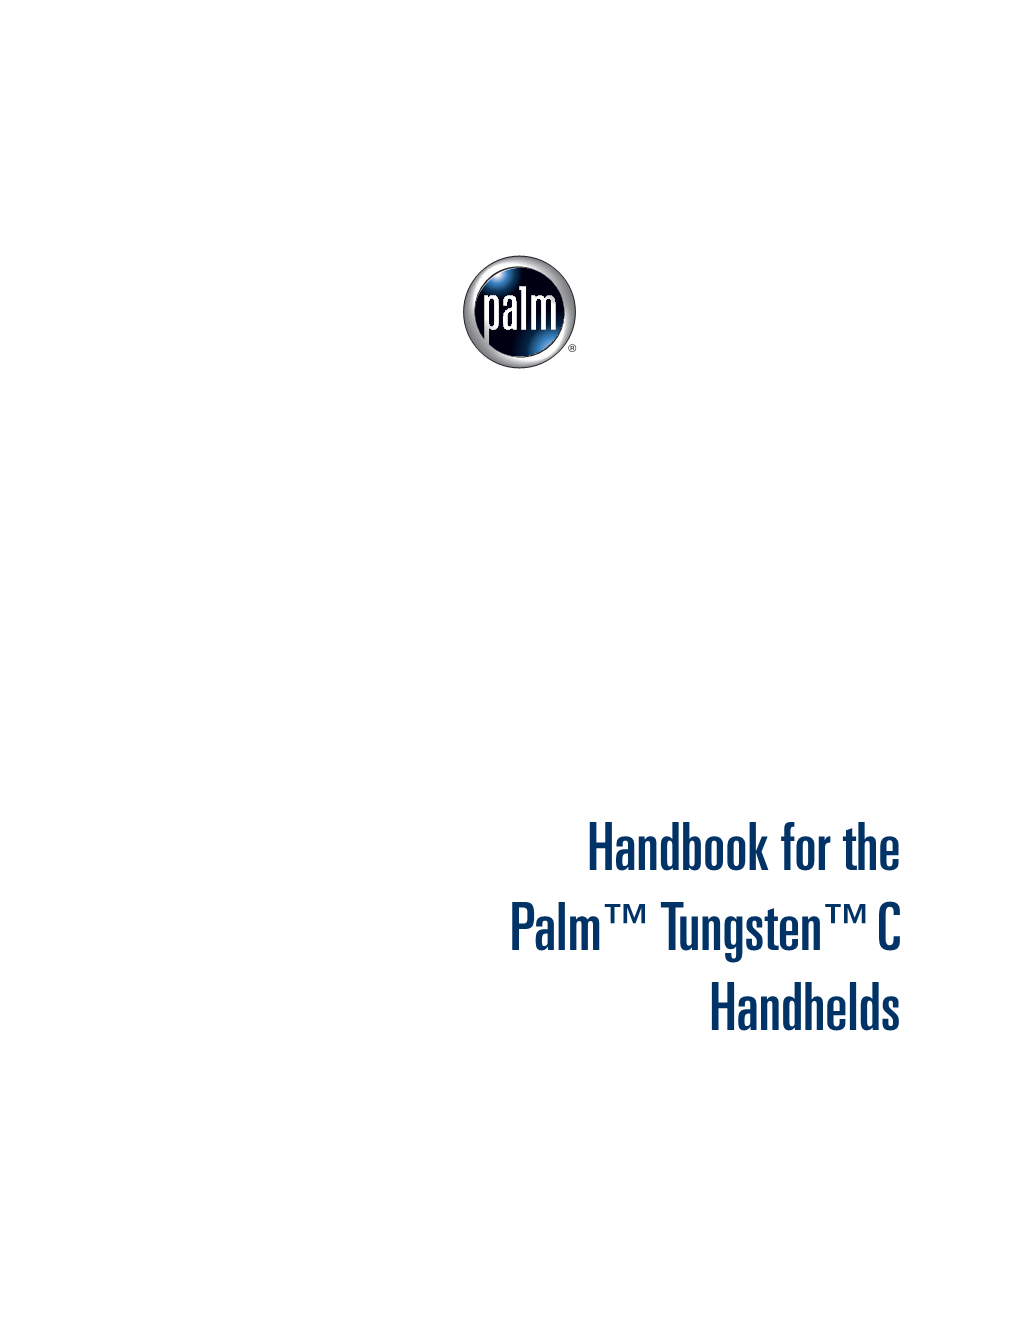 Handbook for the Palm Tungsten C Handhelds